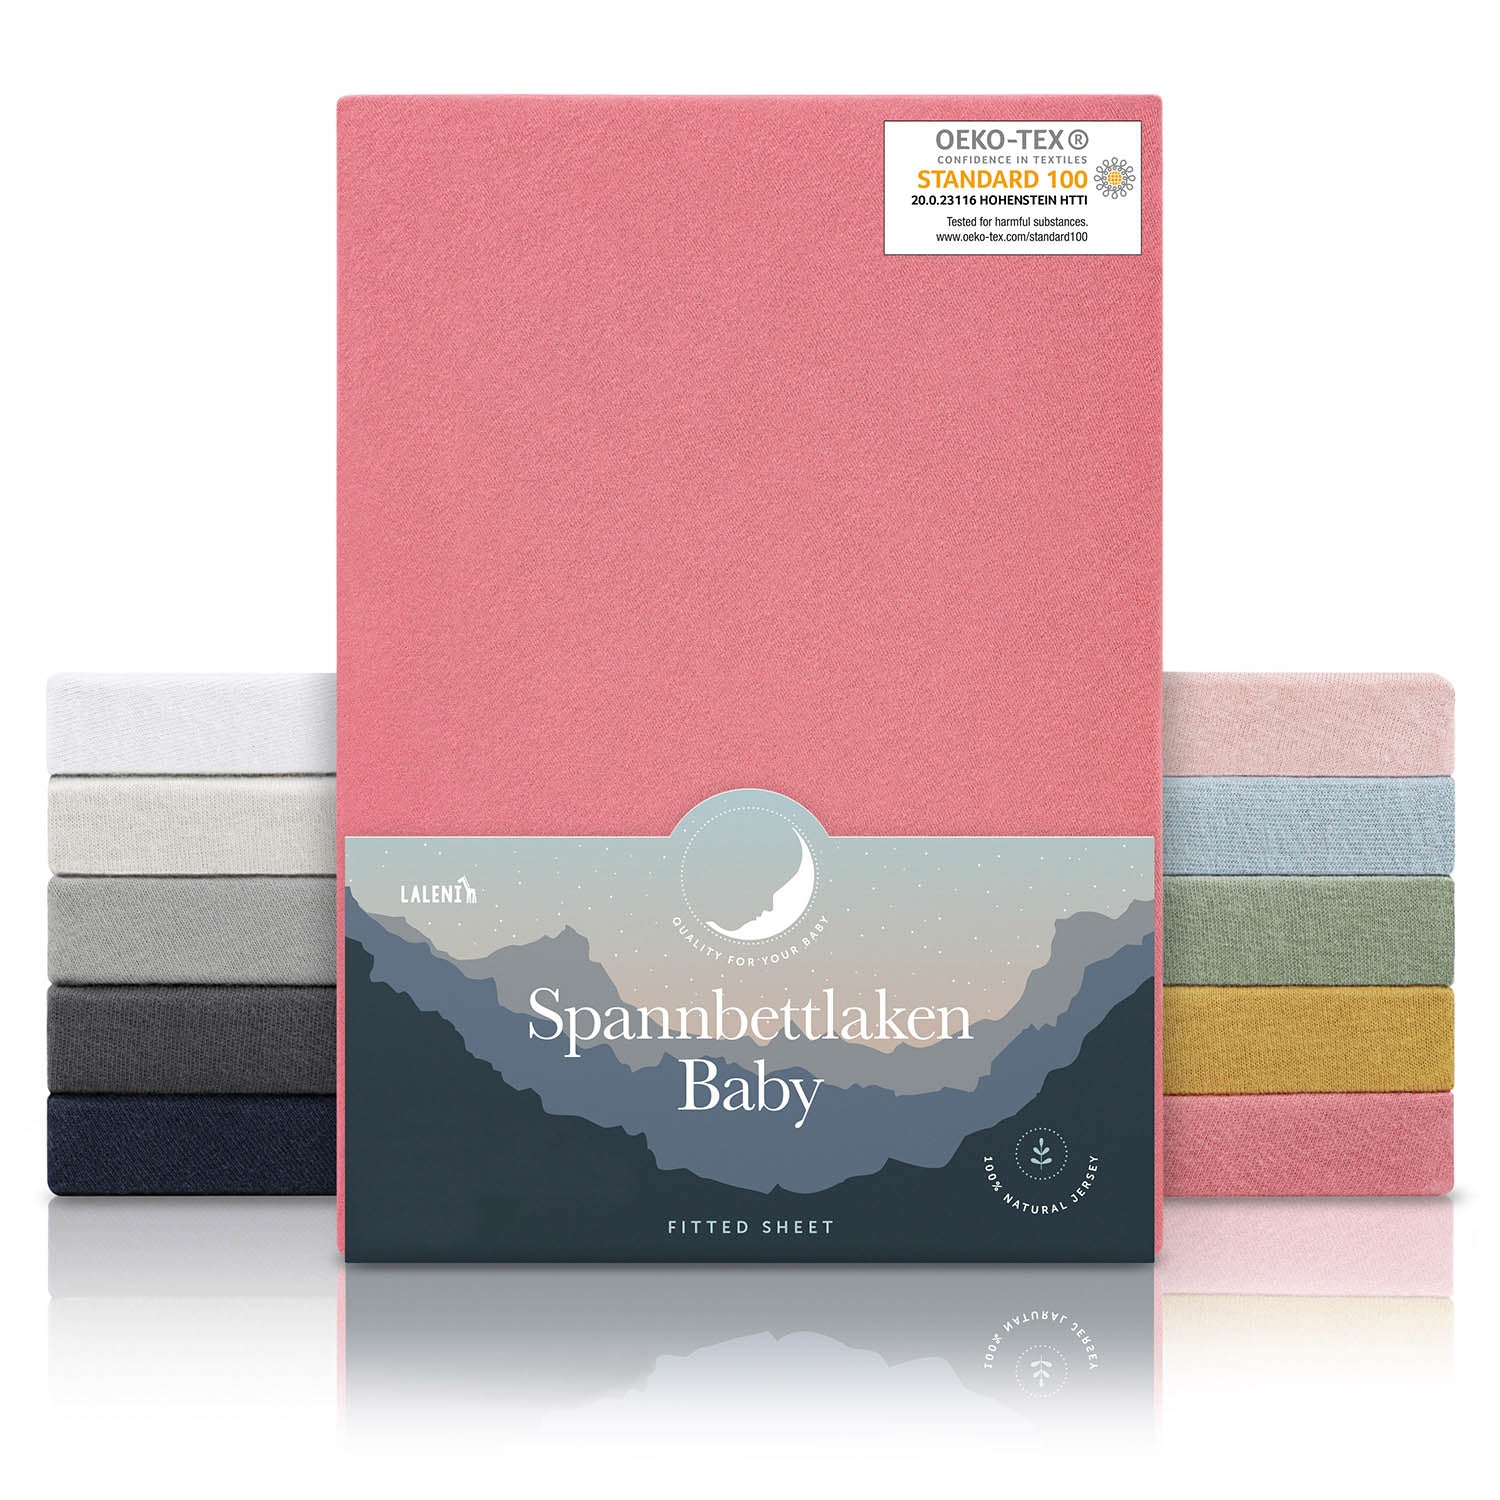 Verpackung von coralfarbenen Spannbettlaken für Babys mit Öko-Tex Standard 100 Siegel präsentiert neben einem Stapel Laken in verschiedenen Farben.